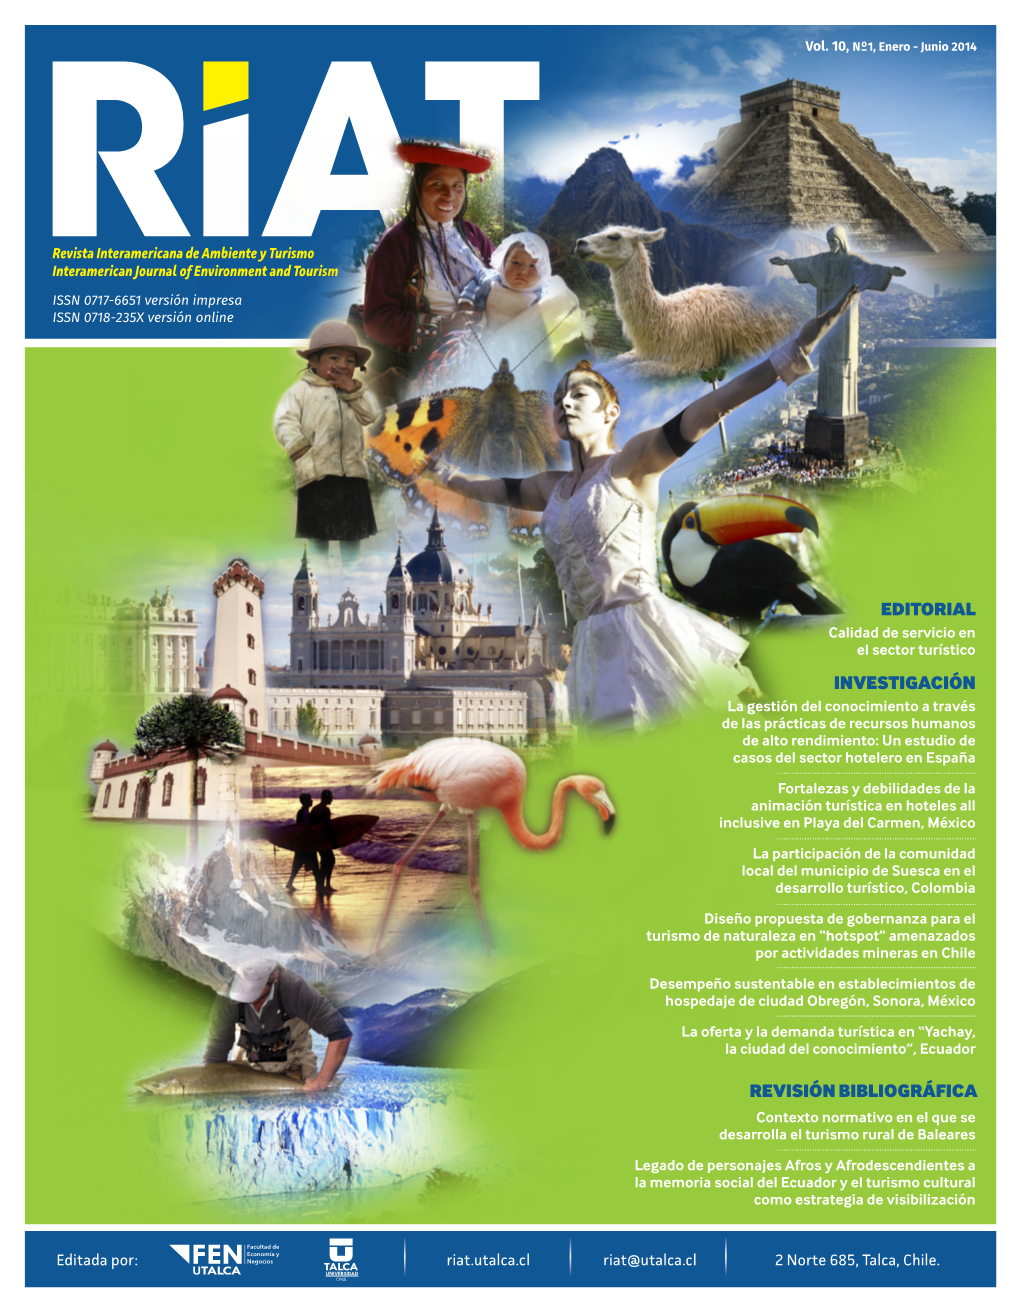 Revista Interamericana De Ambiente Y Turismo. EDITORIAL INVESTIGACIÓN REVISIÓN BIBLIOGRÁFICA